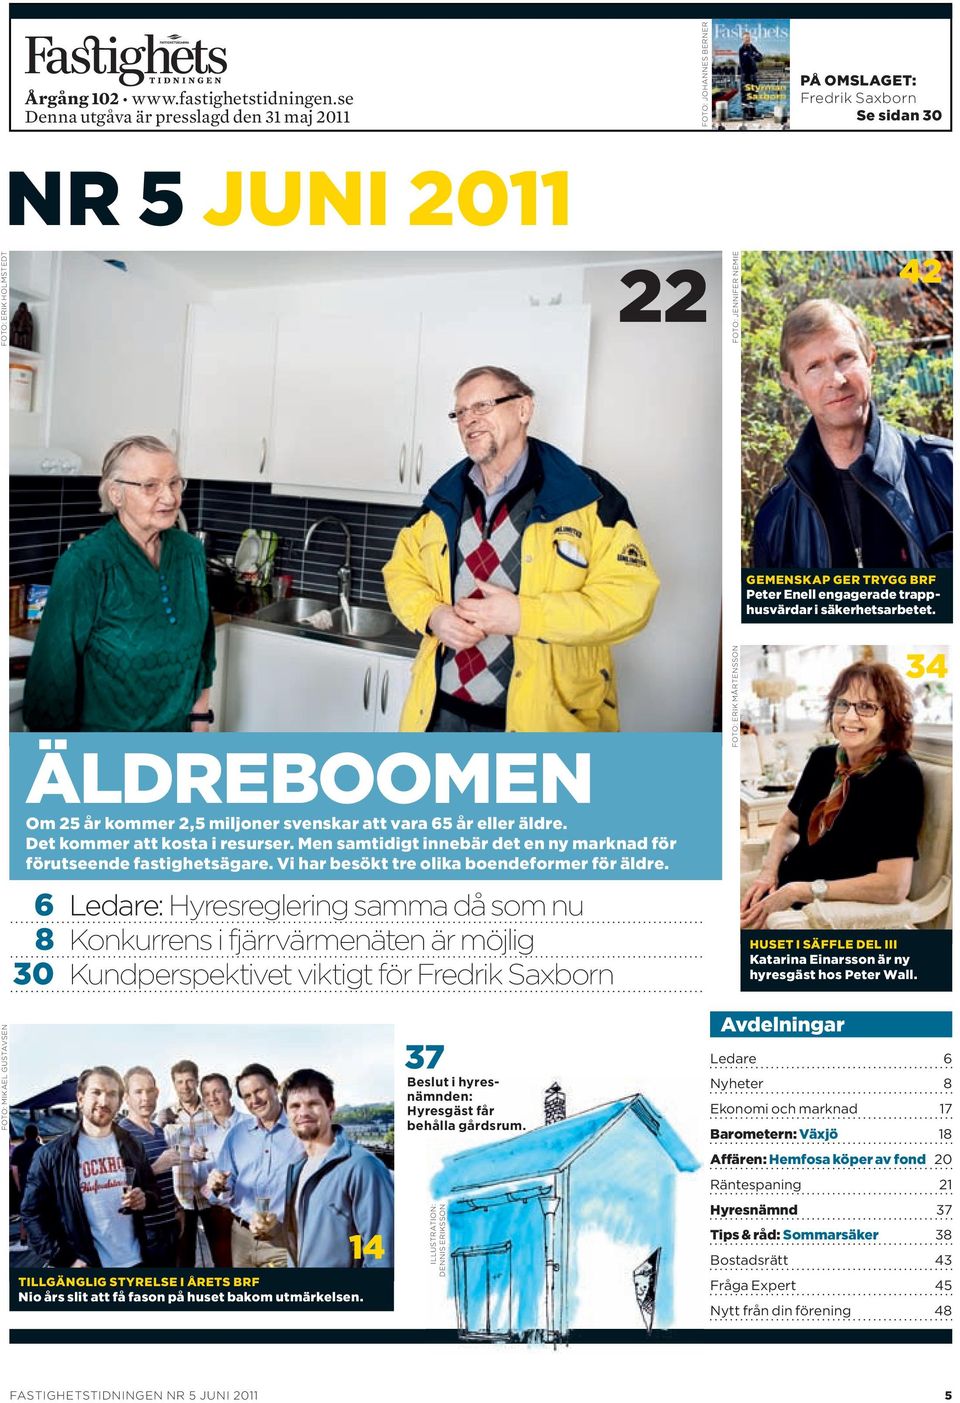 Peter enell engagerade trapphusvärdar i säkerhetsarbetet. äldreboomen om 25 år kommer 2,5 miljoner svenskar att vara 65 år eller äldre. Det kommer att kosta i resurser.